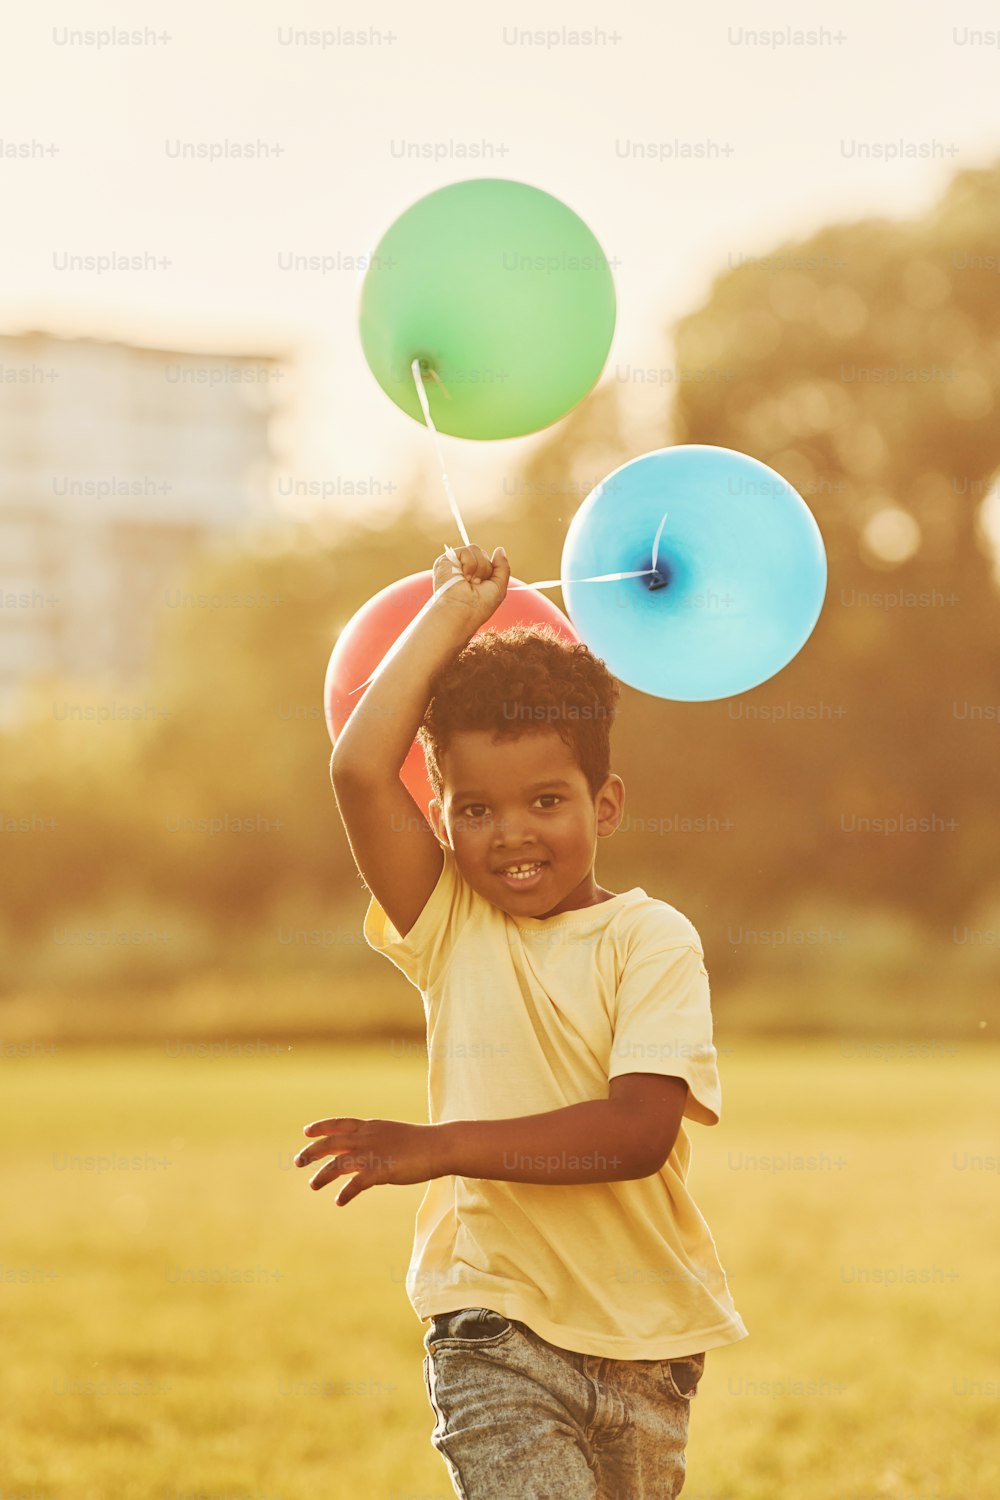 風船を手に持った状態。アフリカ系アメリカ人の子供は、夏の昼間にフィールドで楽しんでいます。